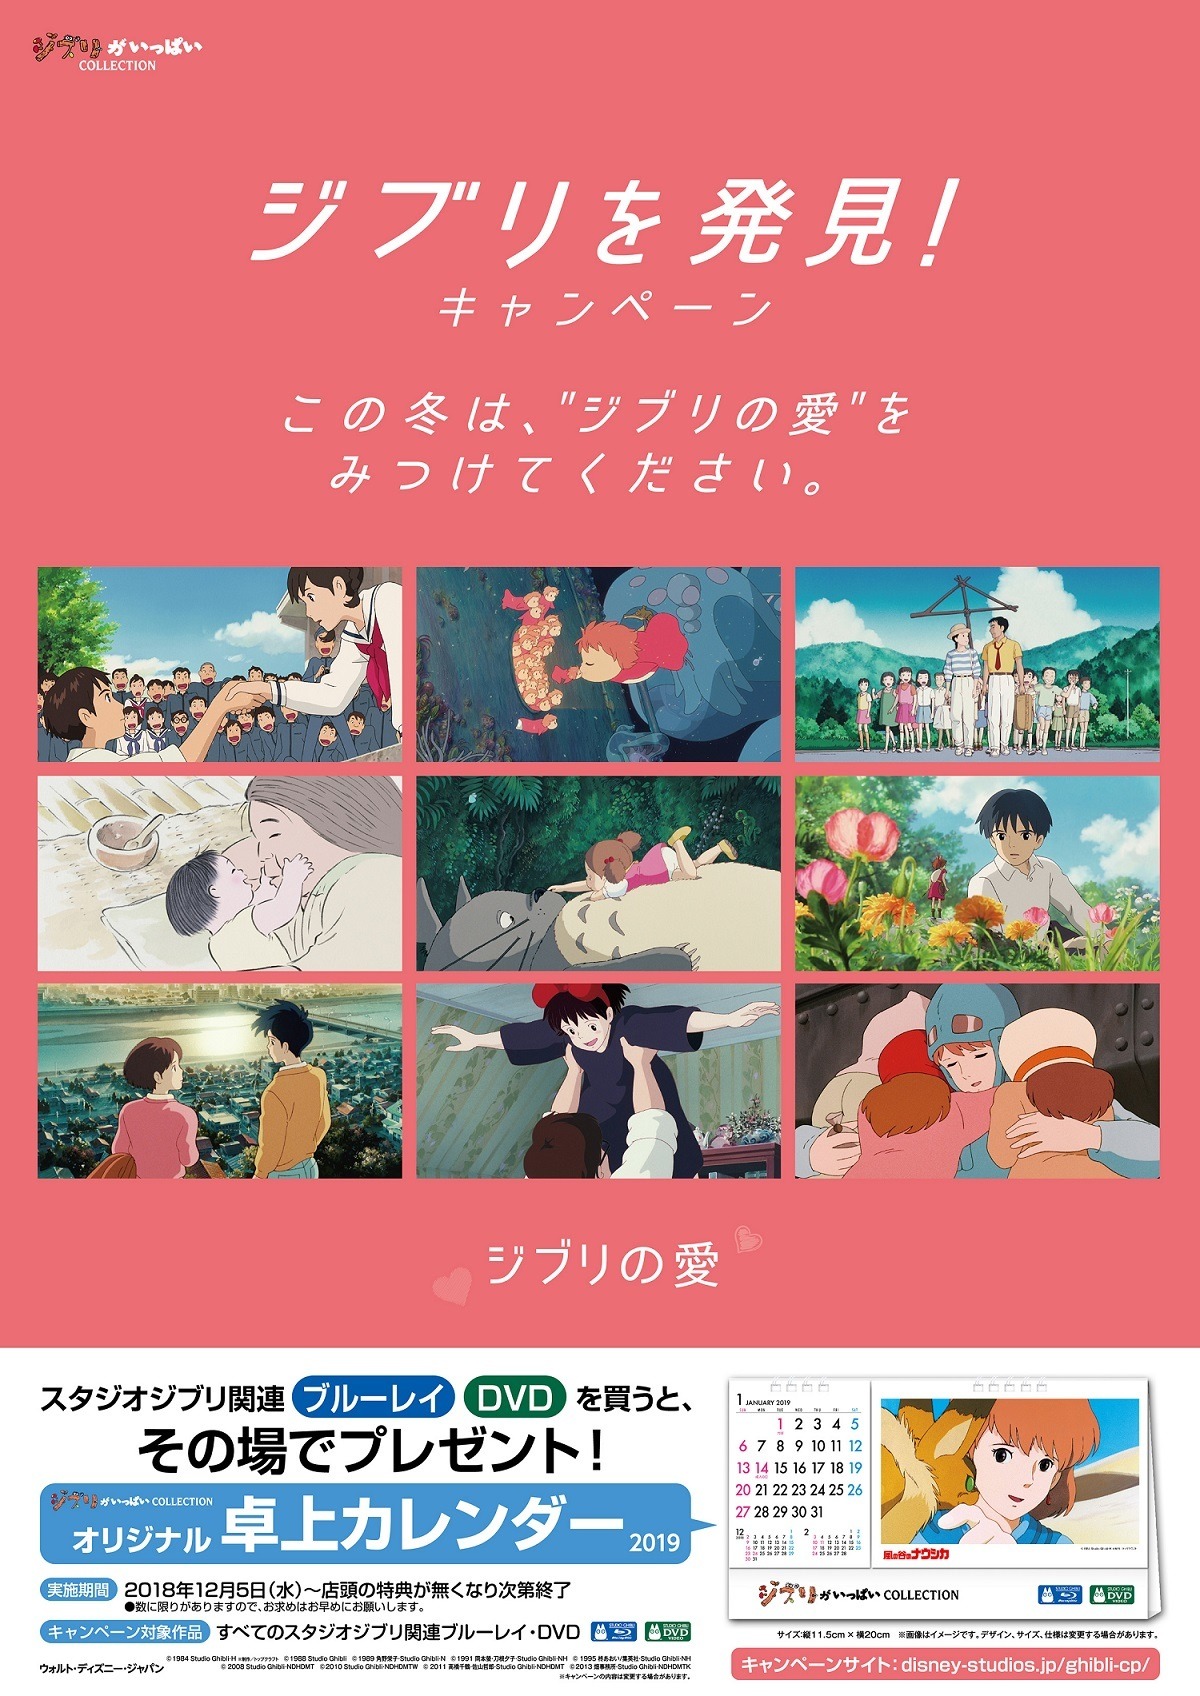 プレゼント ジブリがいっぱい Collection オリジナル卓上カレンダー 3名様 アニメ アニメ